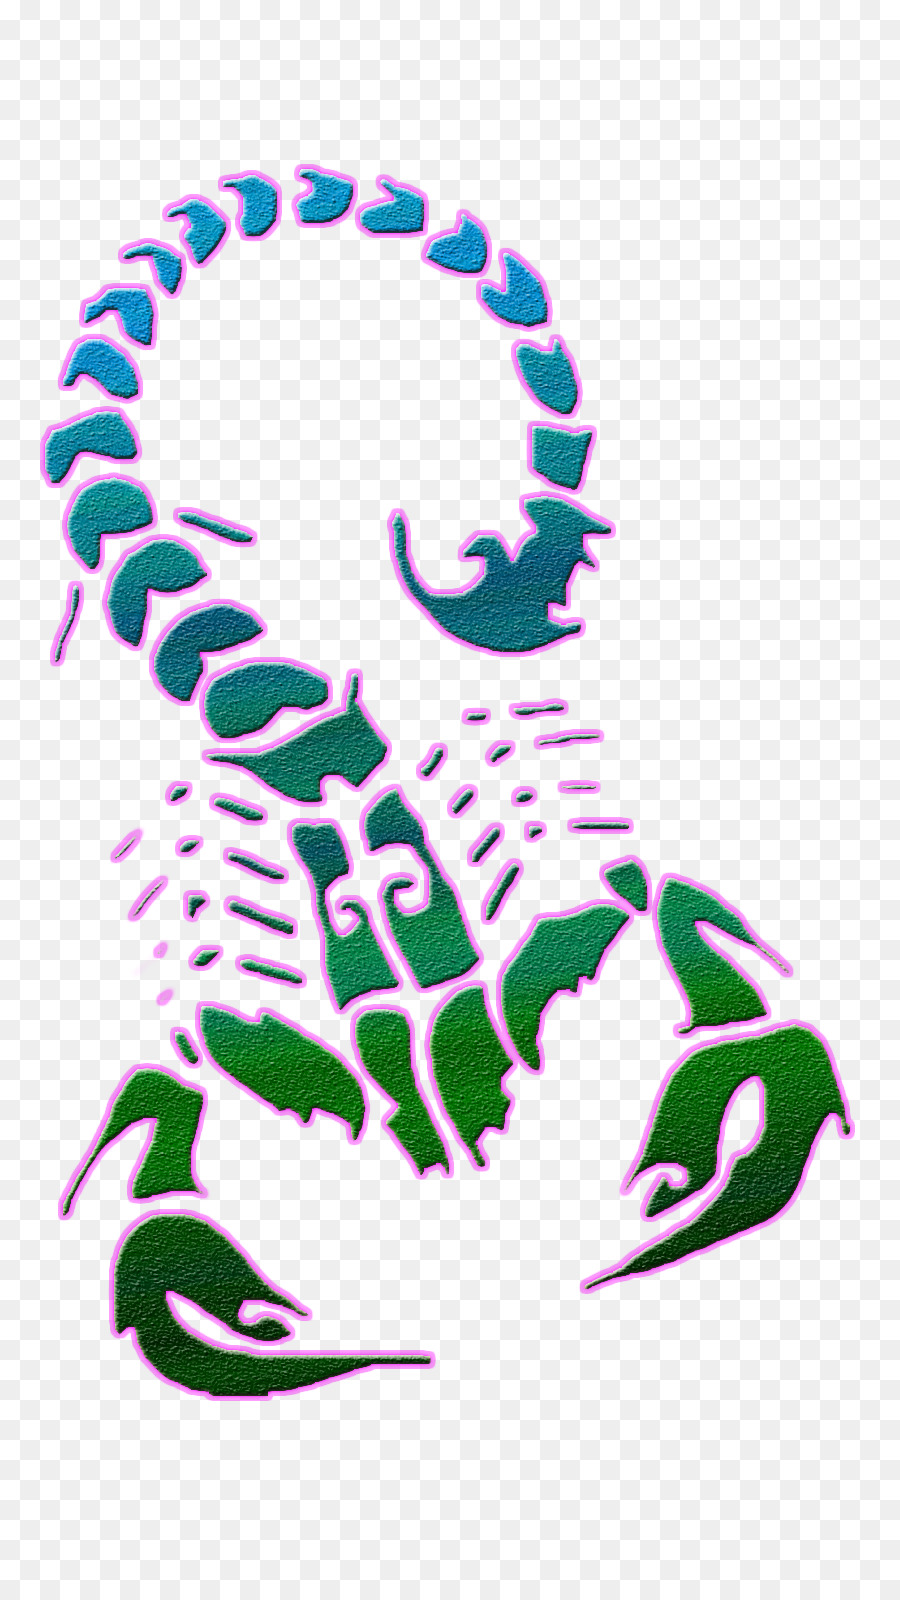 Scorpion Tattoo Clip Art - Skorpion